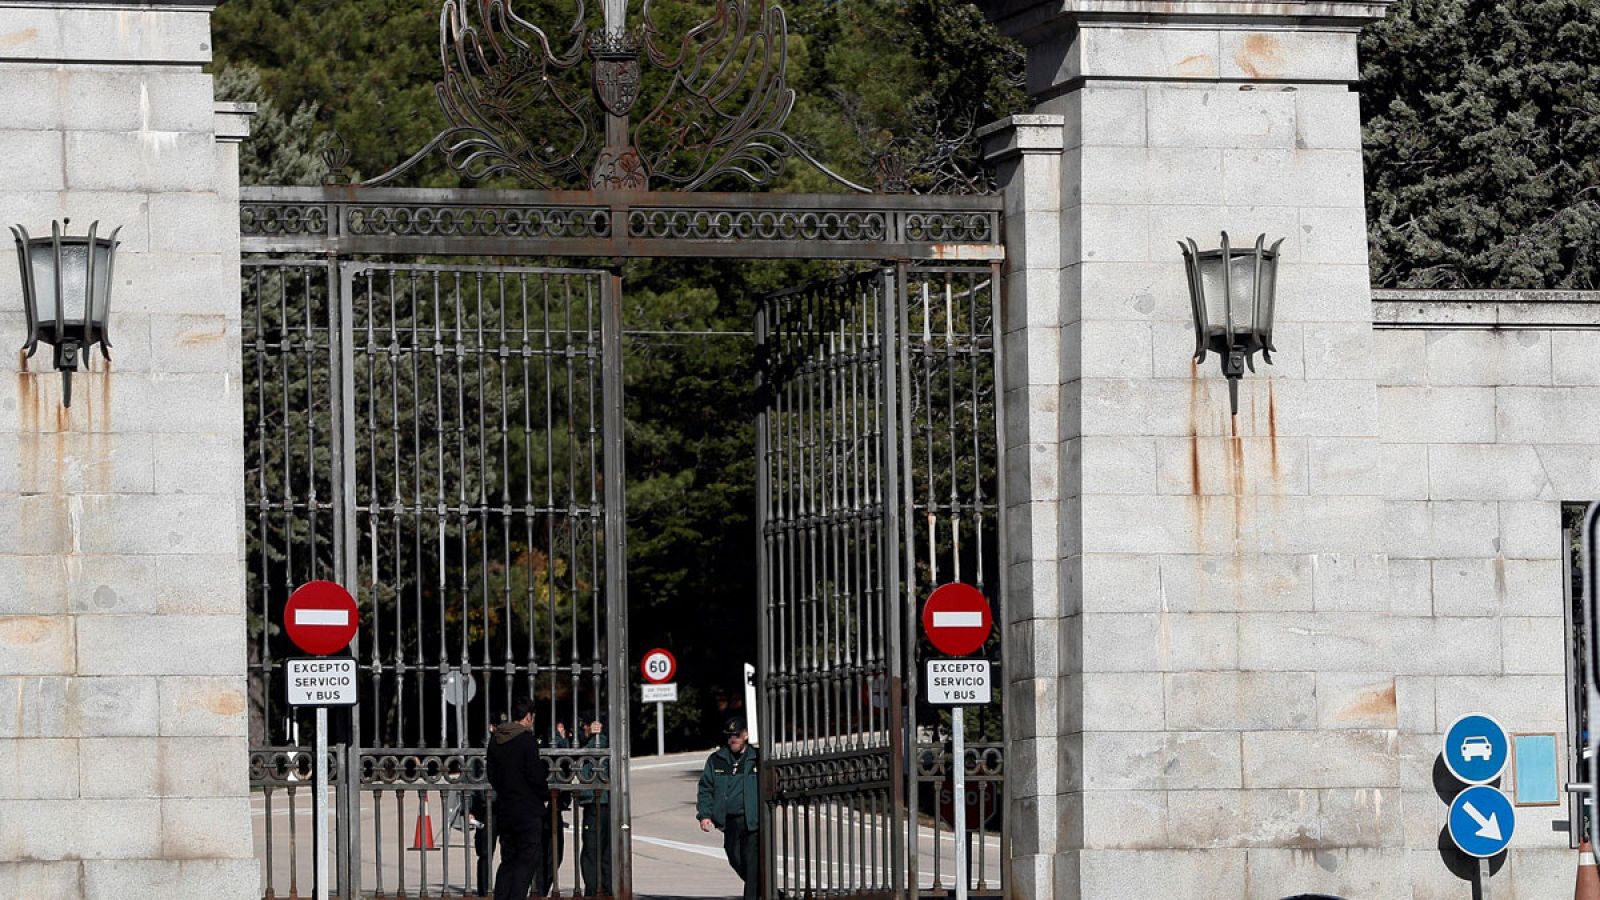 El prior del Valle de los Caídos denuncia a la Guardia Civil por un "acceso inconsentido" al templo